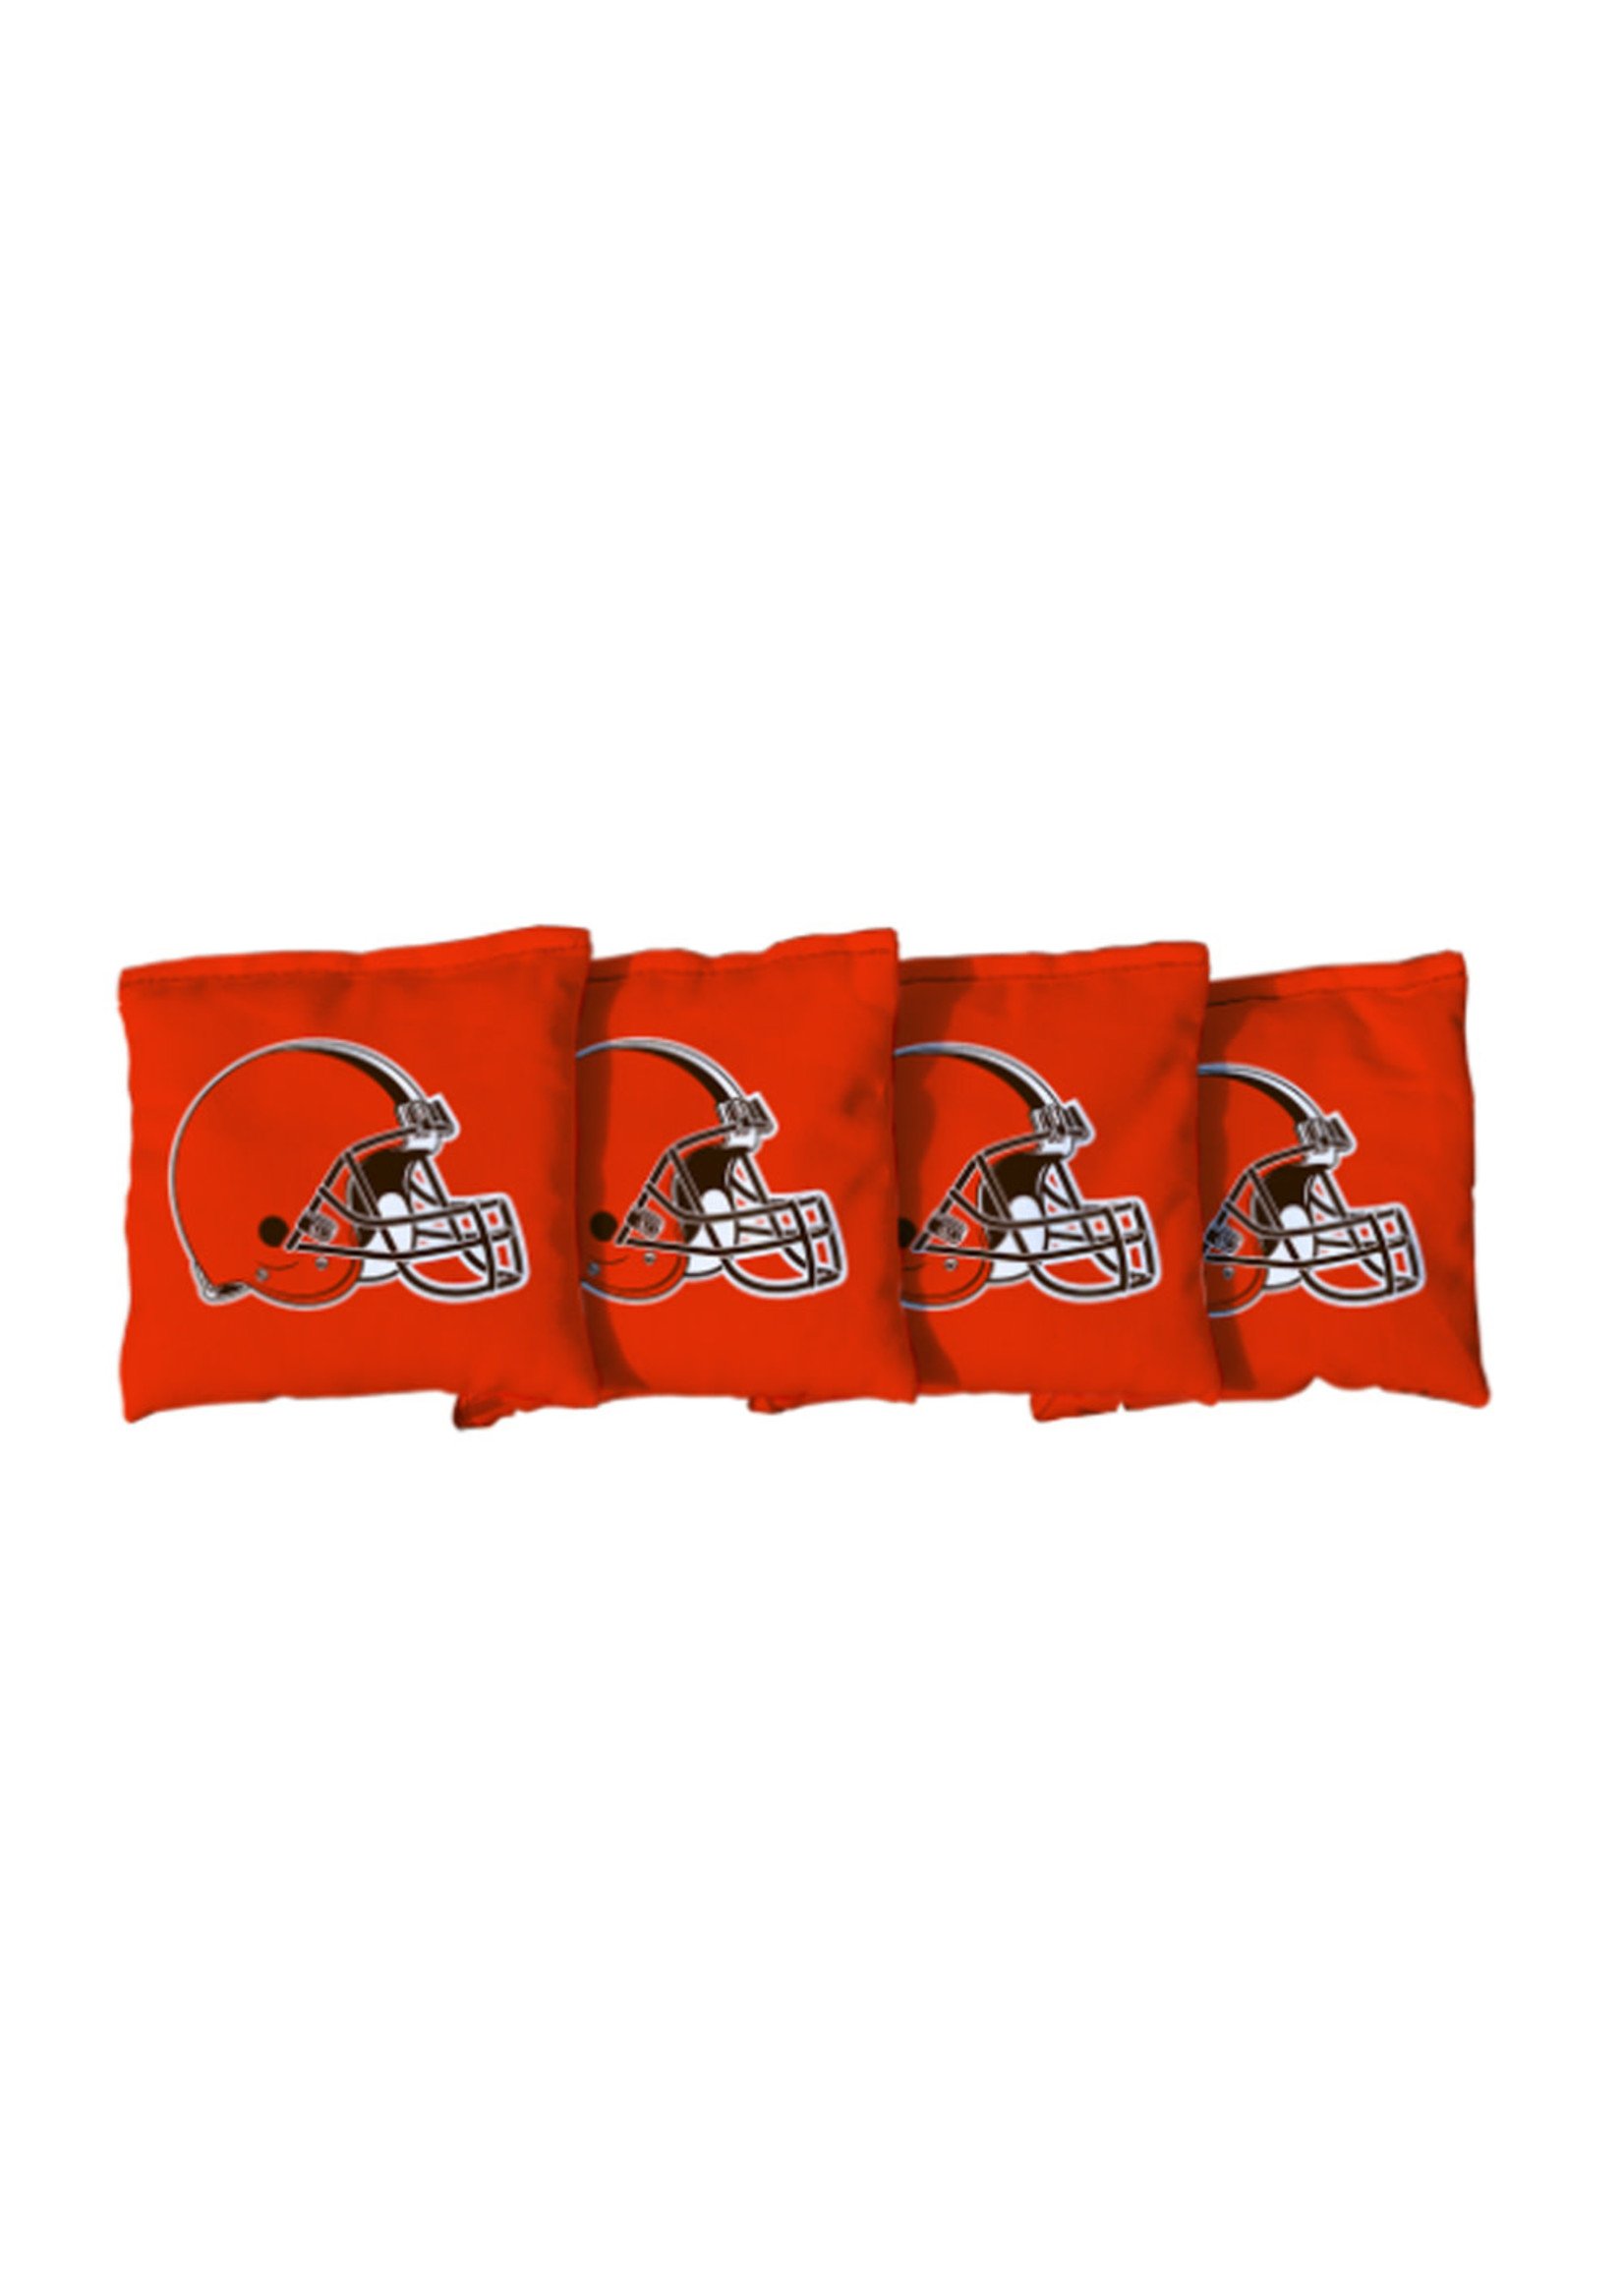 Cleveland Browns Orange Regulation Bags - 4ct